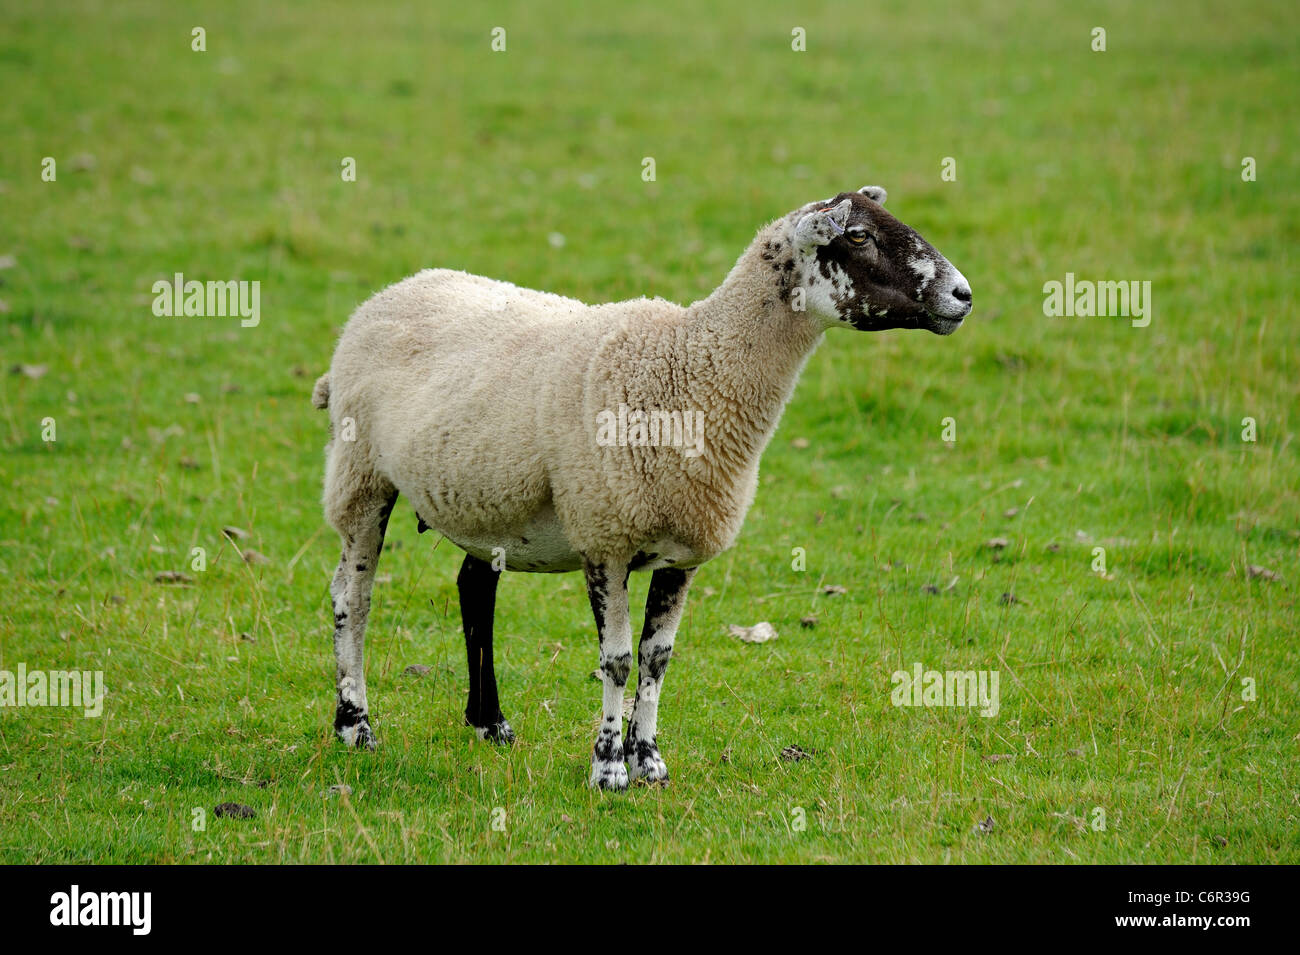 sheep on farmland chatsworth park estate derbyshire england uk Stock Photo